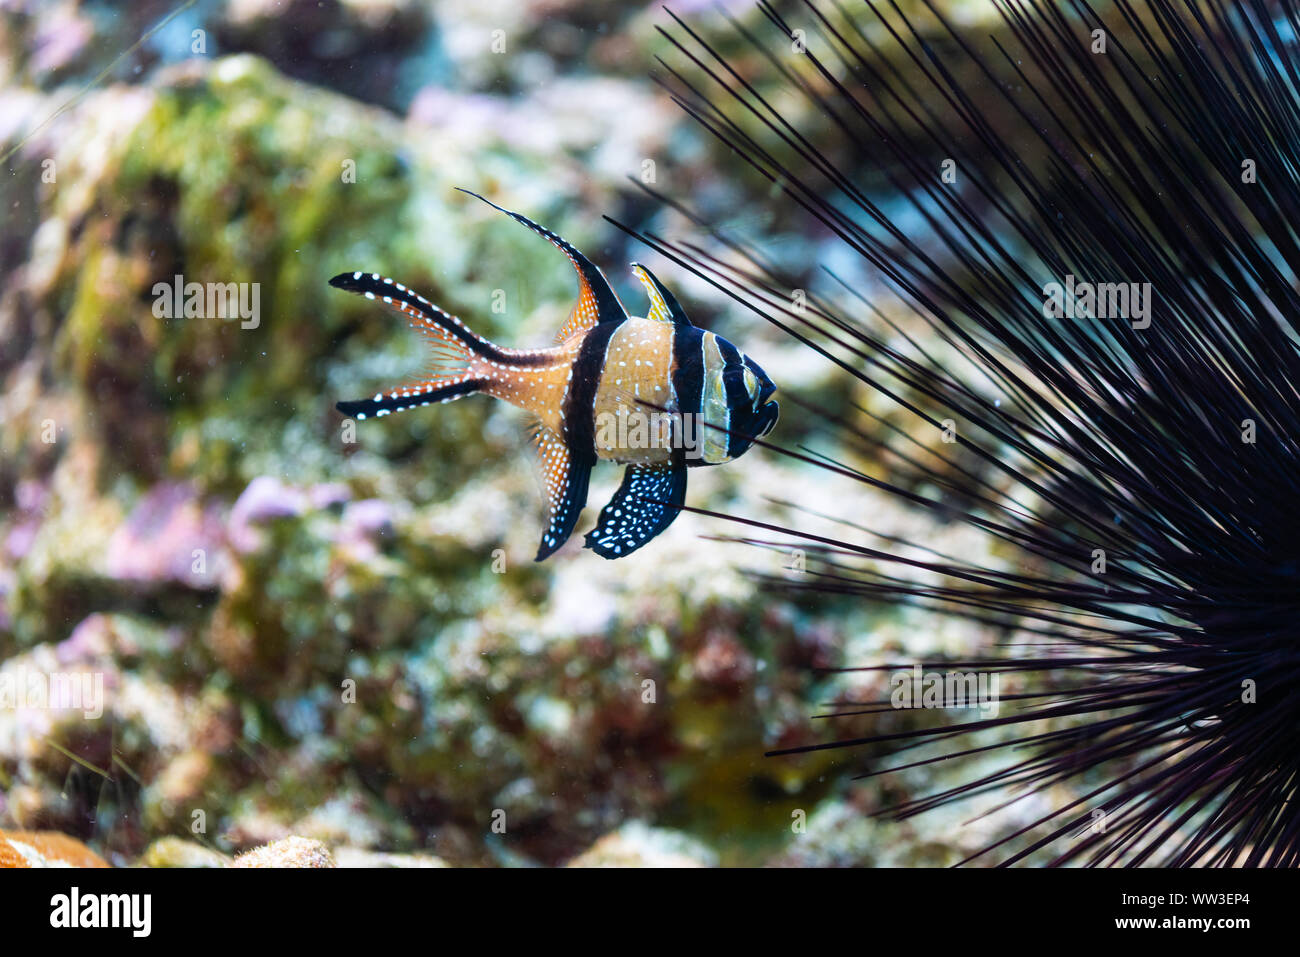 pterapogon kauderni - Banggai cardinalfish - saltwater fish Stock Photo